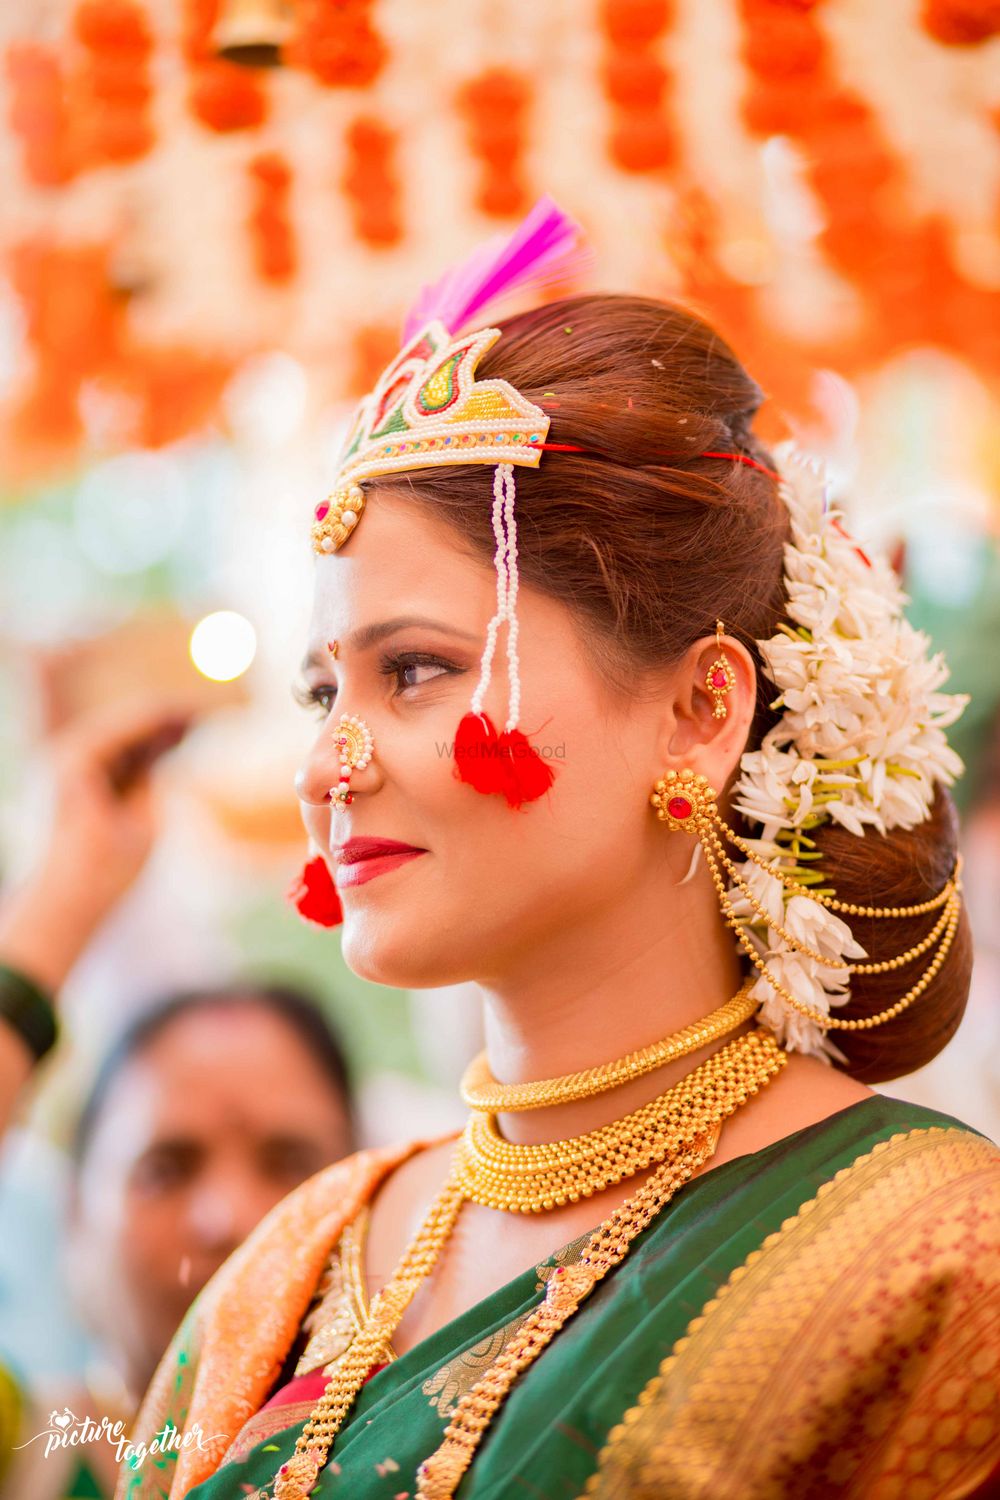 Photo of Smiling marathi bride